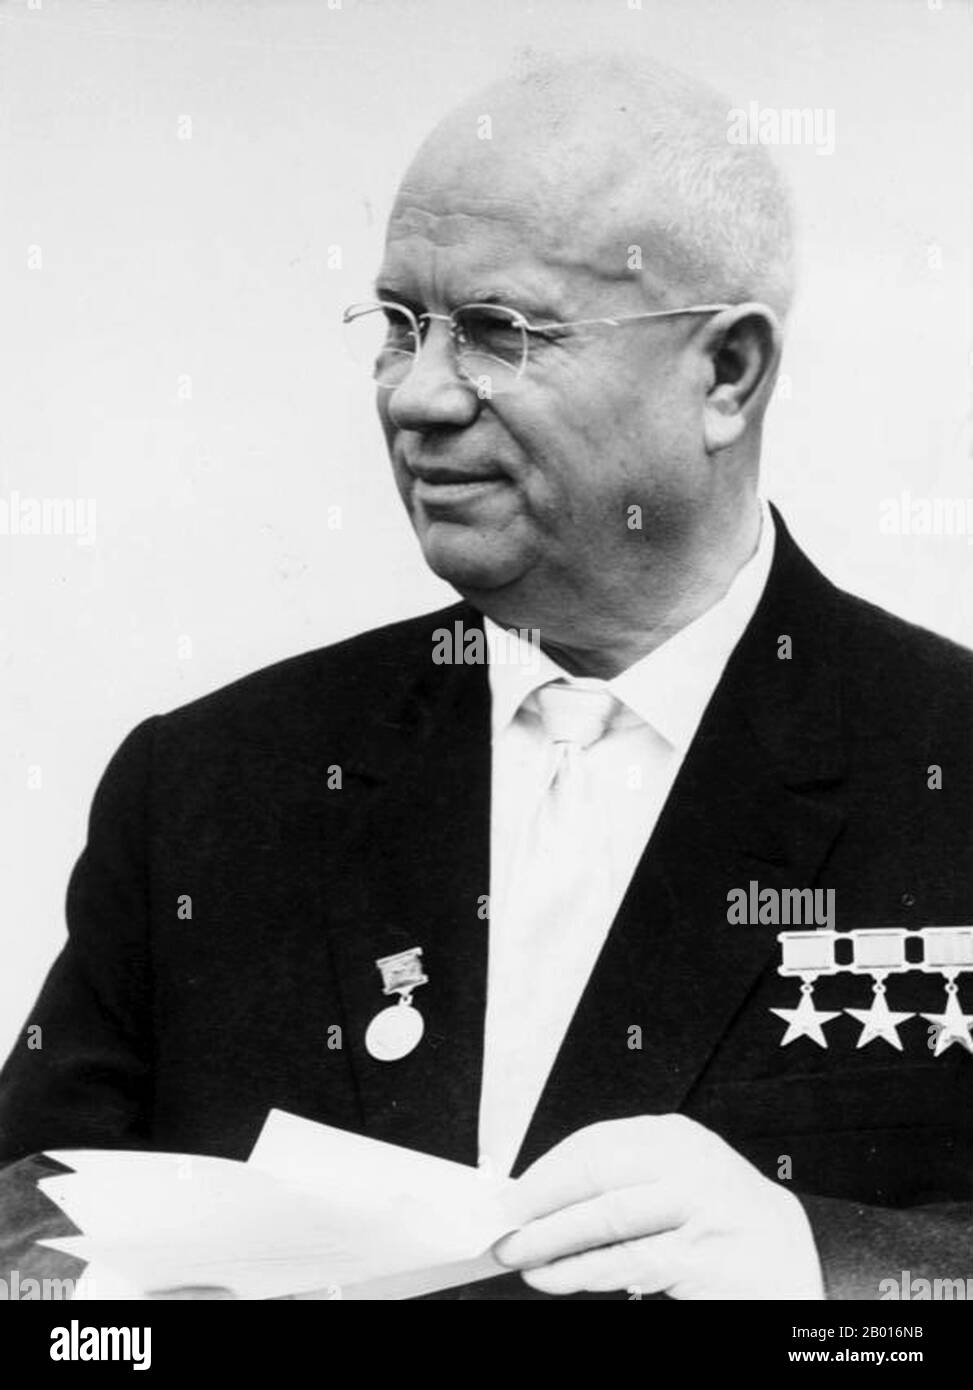 Unione Sovietica: Nikita Khrushchev (15 aprile 1894 - 11 settembre 1971), primo Segretario del Partito Comunista dell'Unione Sovietica (r. 1953-1964), a Berlino Est, giugno 1963. Foto di Bundesarchiv, Bild 183-B0628-0015-035 / Heinz Junge (licenza CC BY-SA 3.0). Nikita Sergeyevich Khrushchev guidò l'Unione Sovietica durante una parte della Guerra fredda. Fu primo segretario del Partito Comunista dell'Unione Sovietica dal 1953 al 1964, e presidente del Consiglio dei Ministri, o Premier, dal 1958 al 1964. Khrushchev era responsabile della parziale de-stalinizzazione dell'Unione Sovietica. Foto Stock